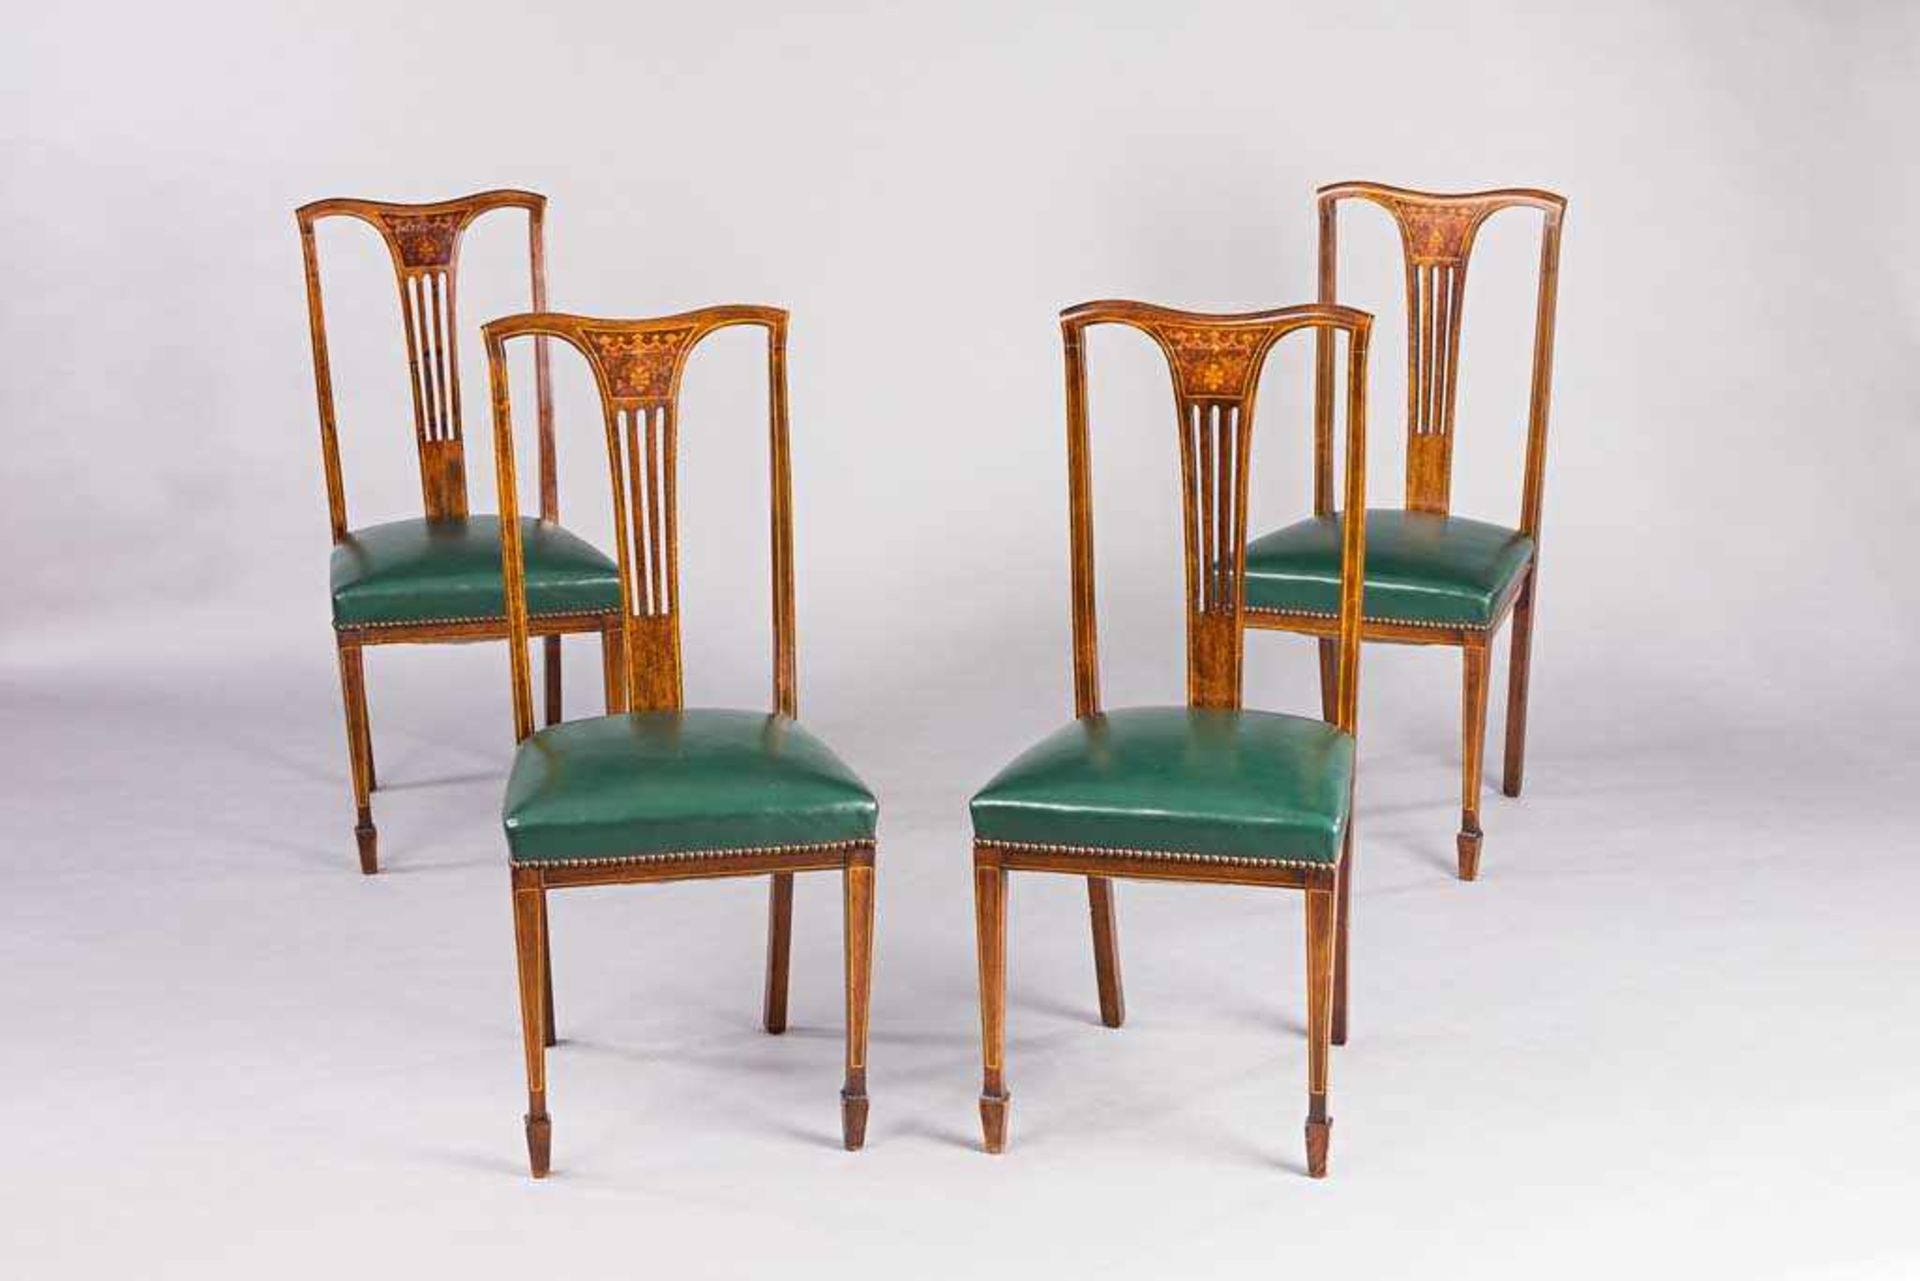 Satz von vier Stühlen. Marqueterie. Mahagoni. Polstersitz. England, um 1900. H 96 (46) cm